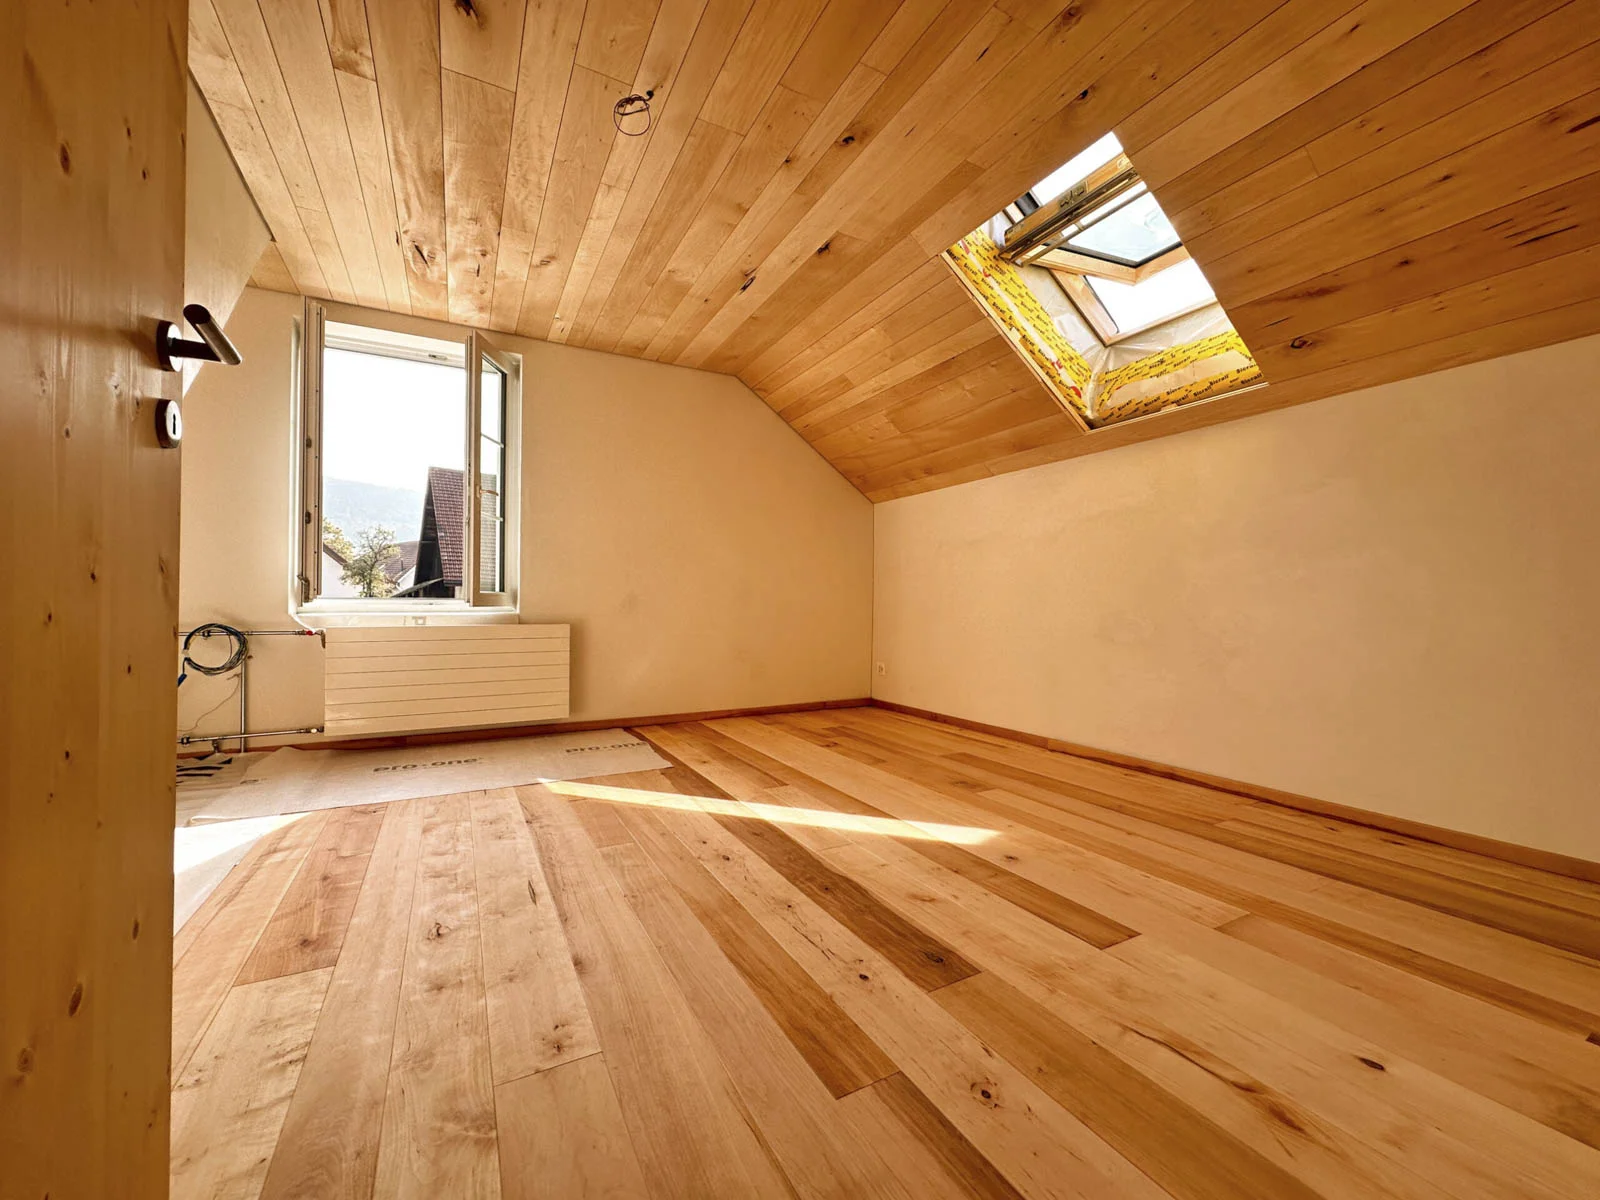 Dachzimmer mit Massivholz Boden und Decke